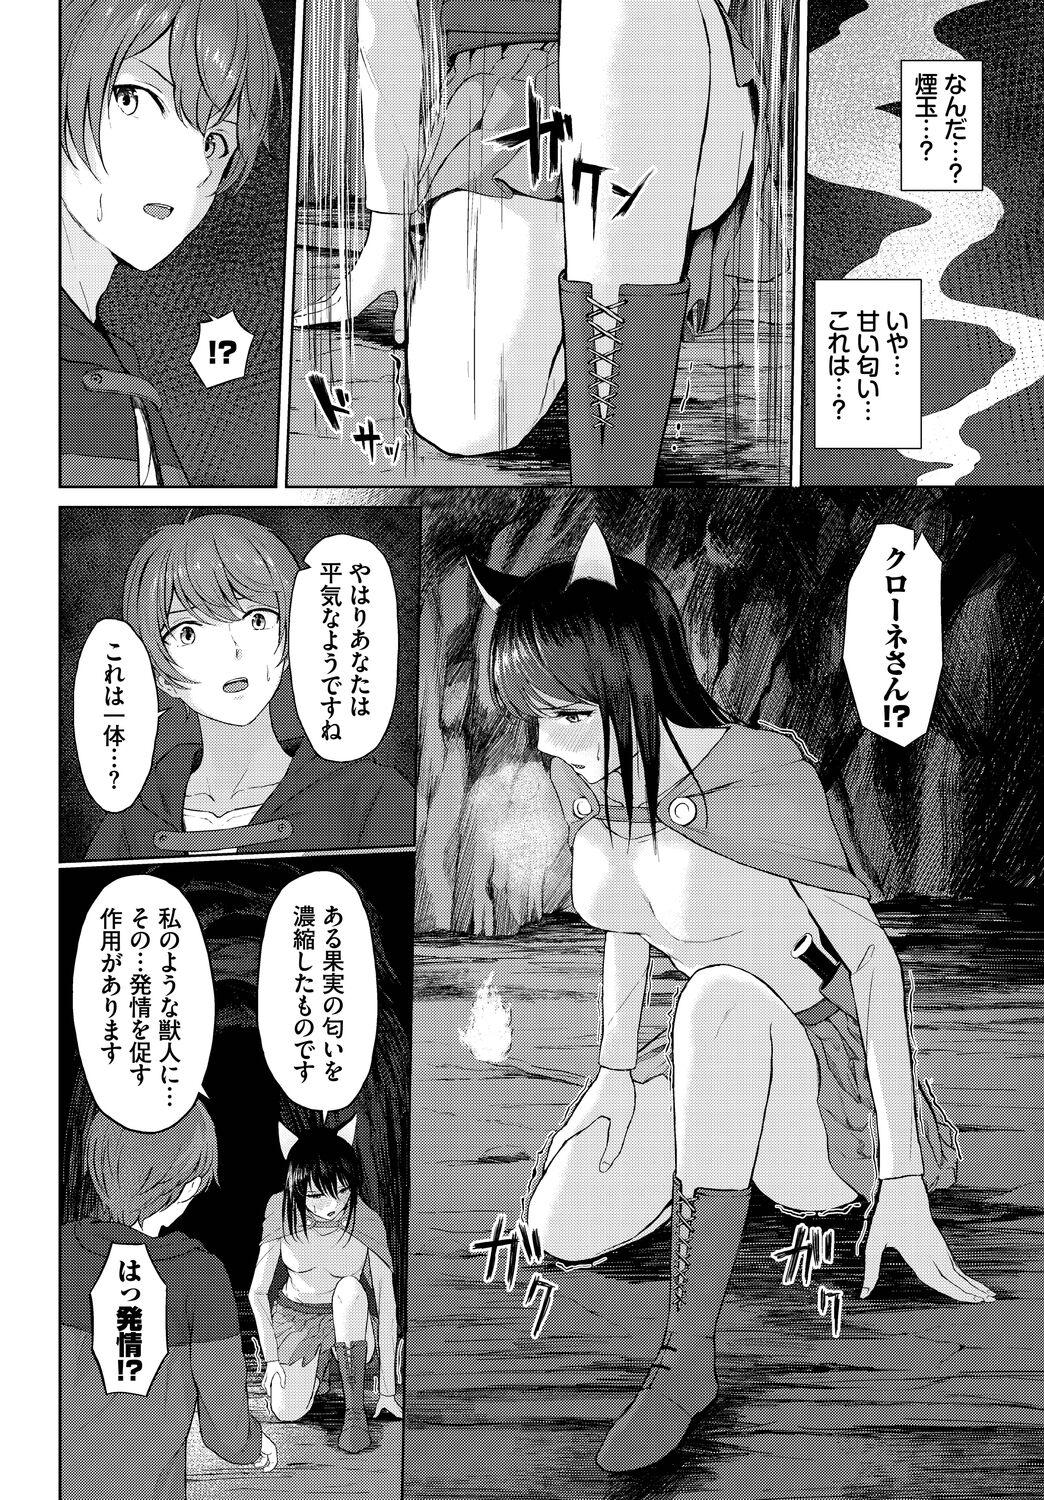 Flexible Dungeon Kouryaku wa SEX de!! Vol. 11 Negra - Page 10